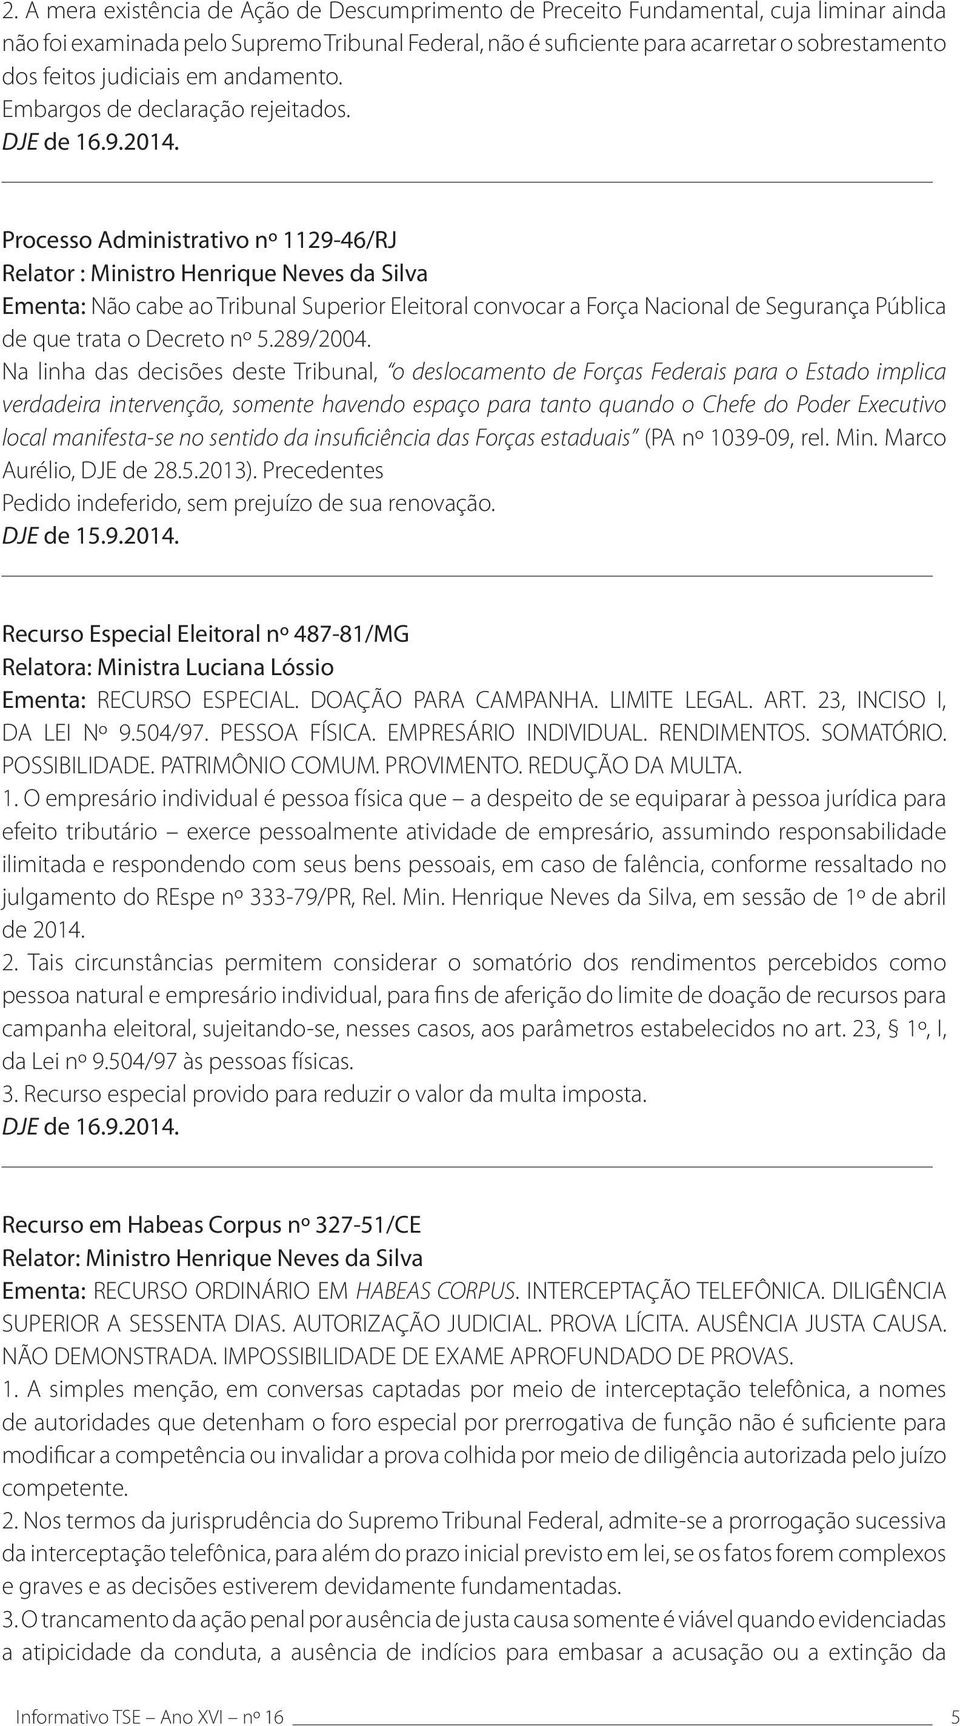 Processo Administrativo nº 1129-46/RJ Relator : Ministro Henrique Neves da Silva Ementa: Não cabe ao Tribunal Superior Eleitoral convocar a Força Nacional de Segurança Pública de que trata o Decreto